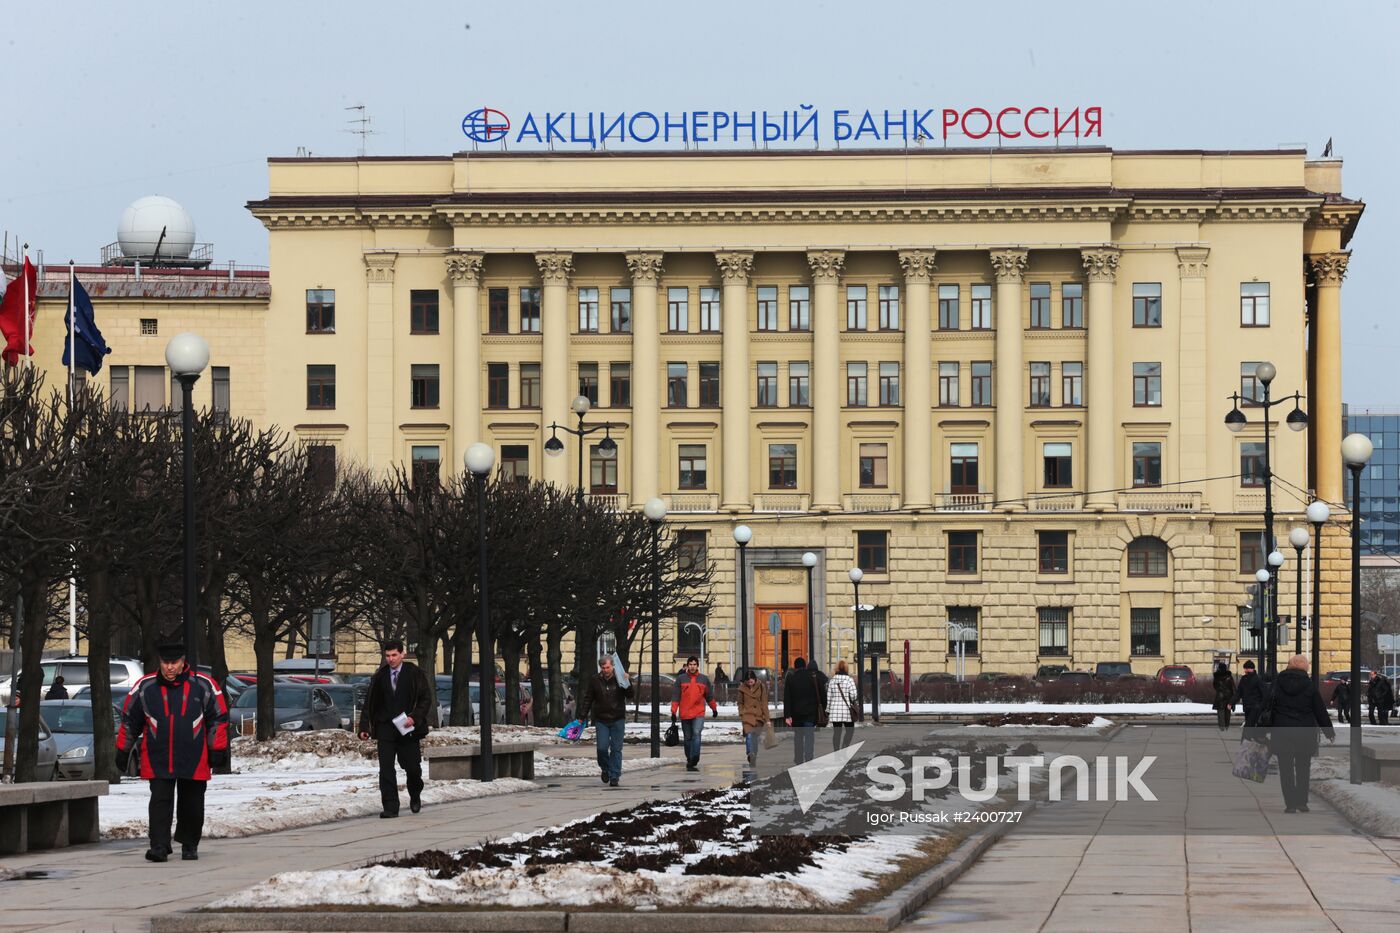 Visa, Mastercard stop providing services to Bank Rossiya clients